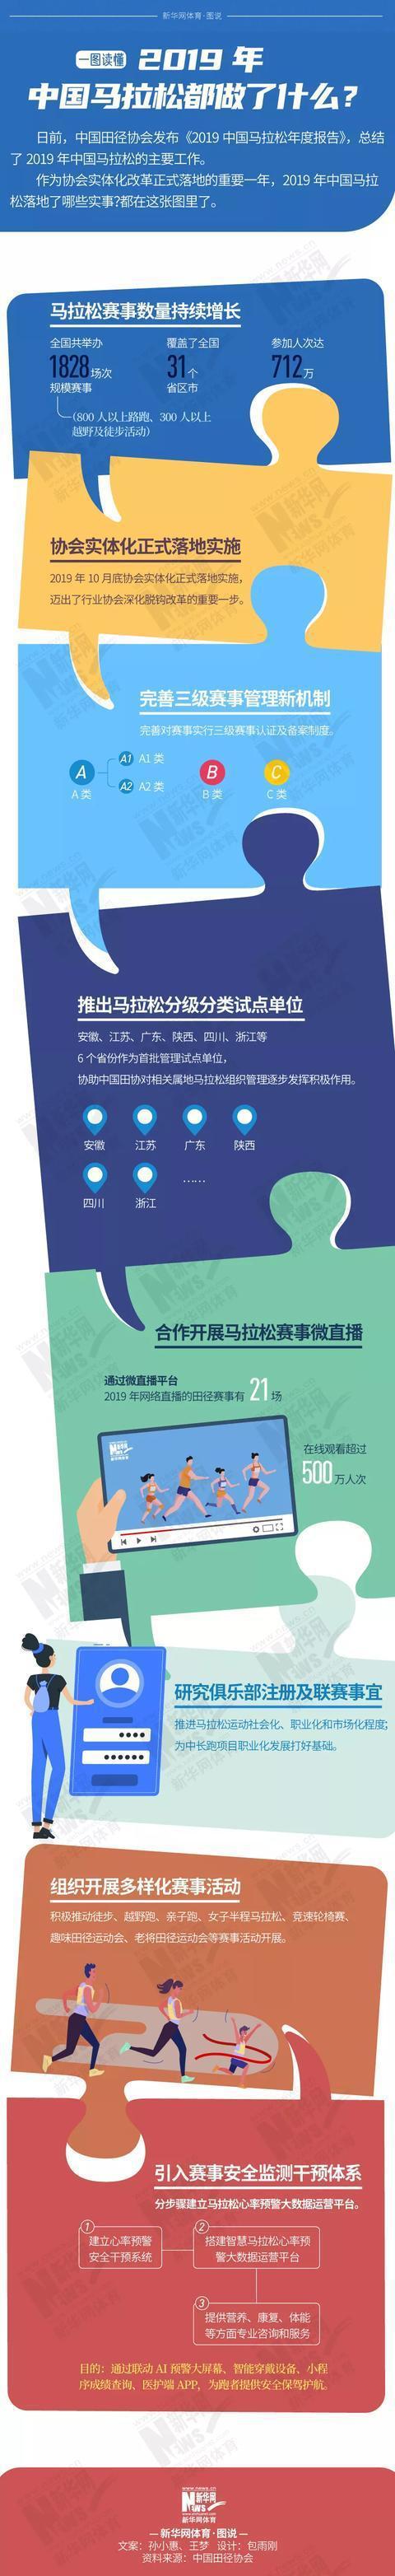 中国马拉松2019年取得这些成绩：规模赛事1828场